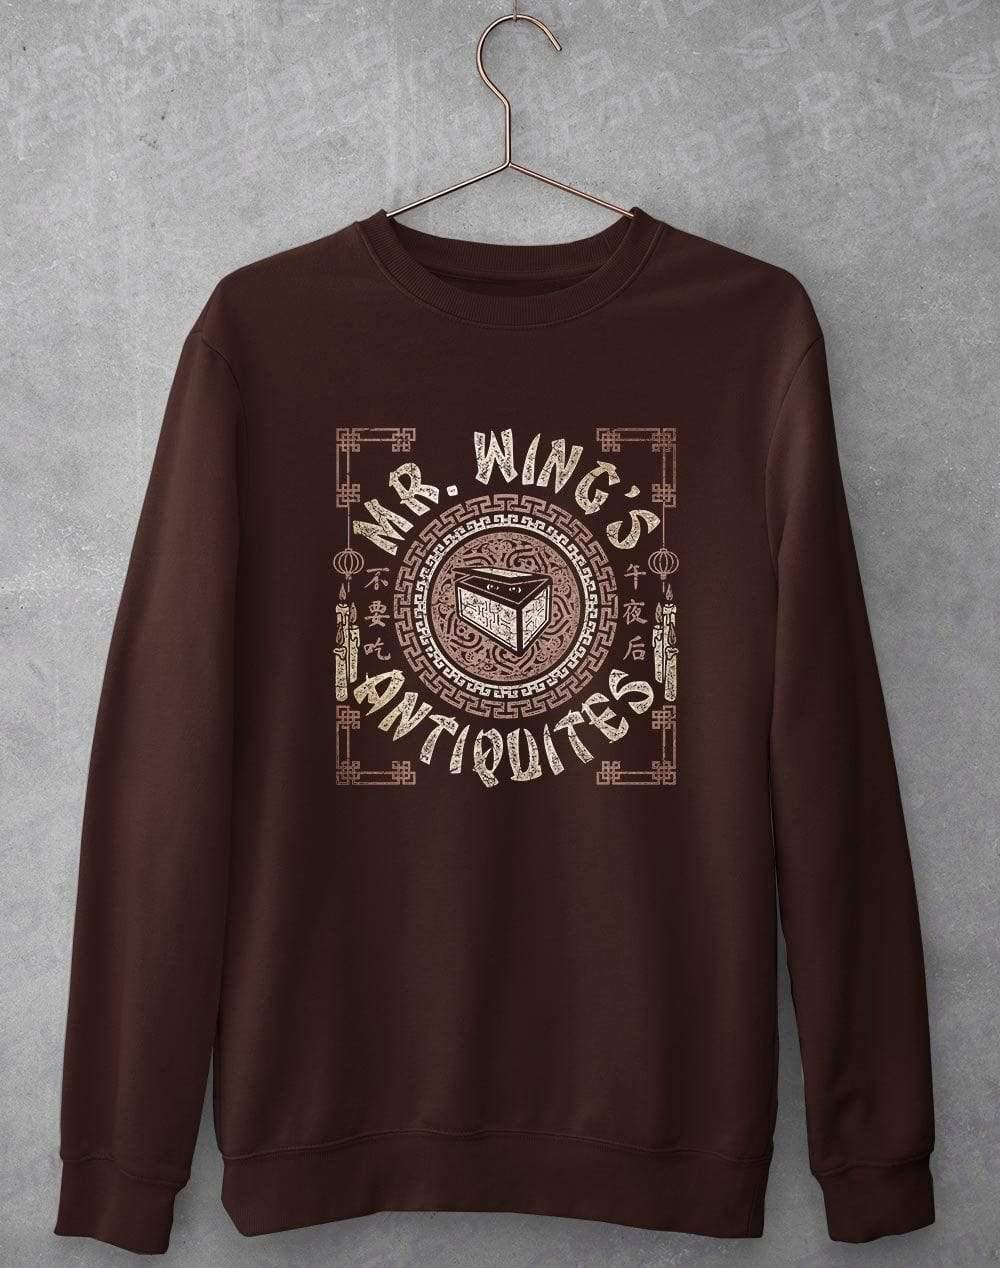 Mr Wings Antiquites Sweatshirt S / Chocolate  - Off World Tees